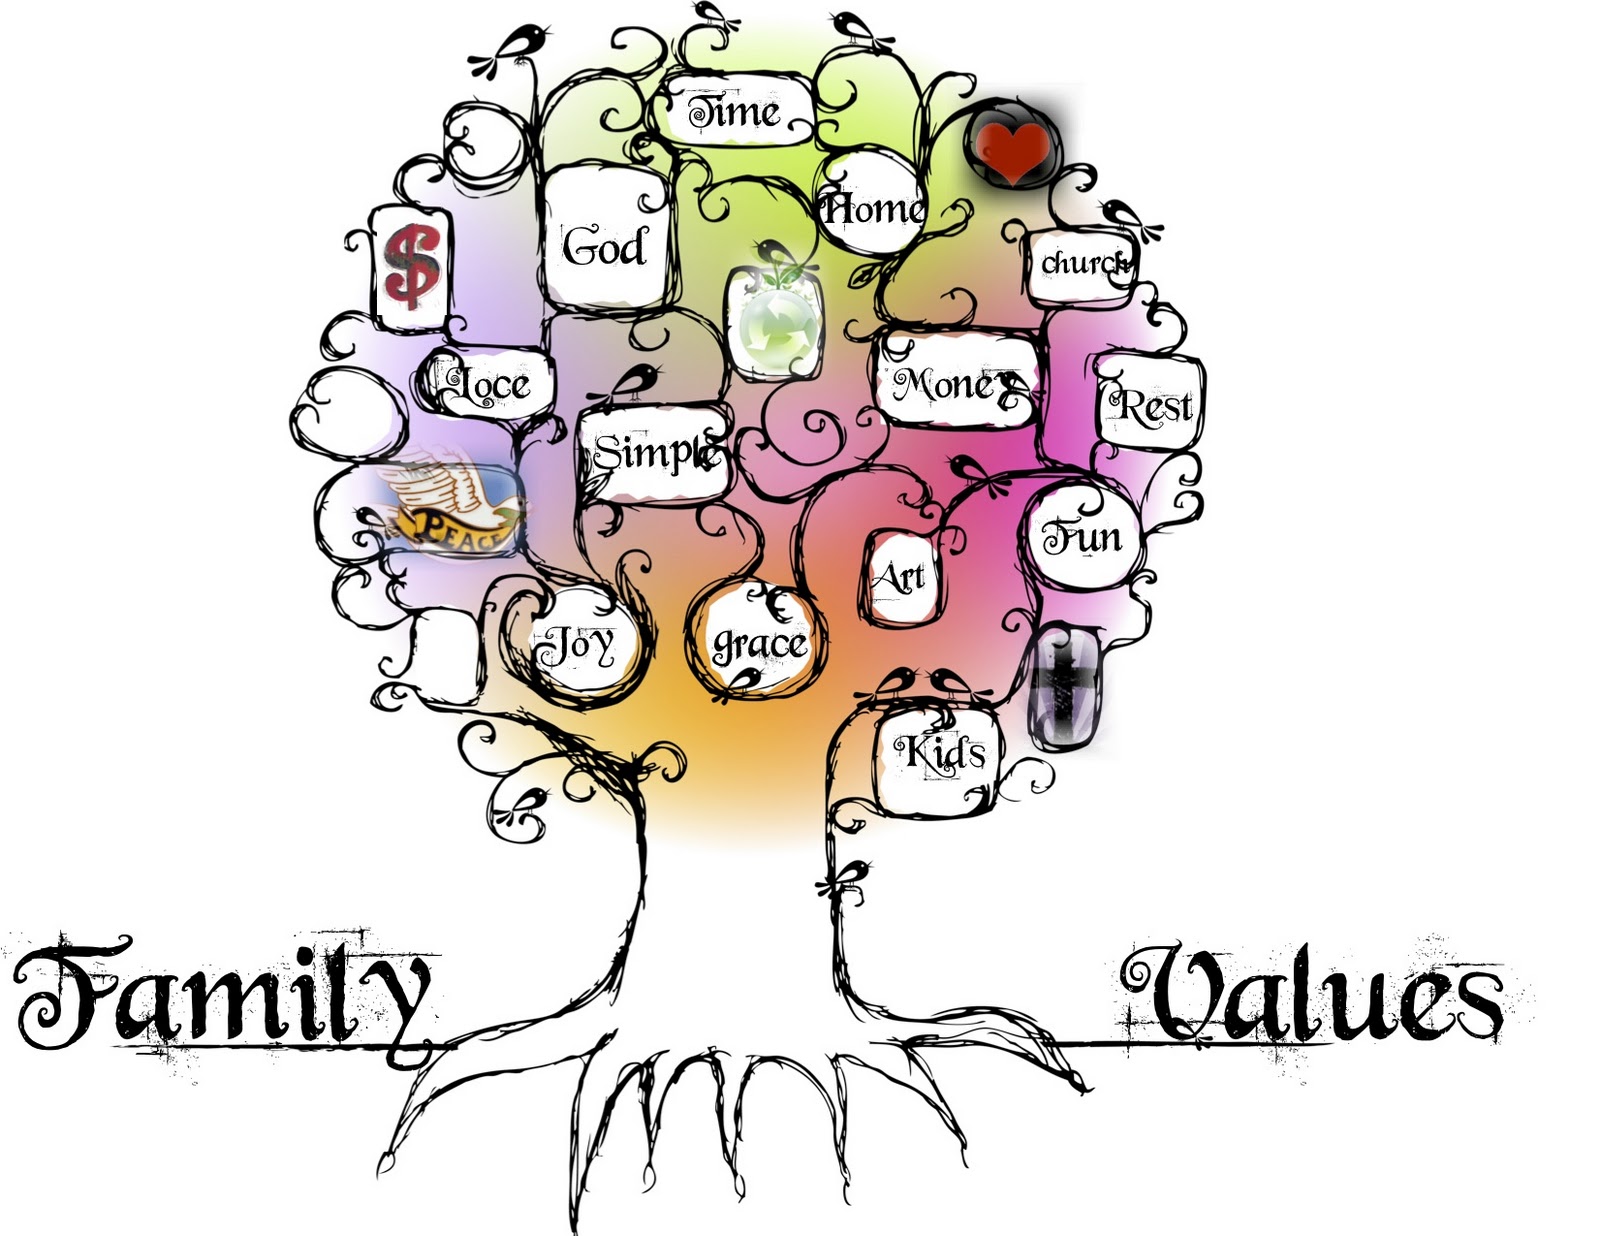 Values topic. The Family values. Family values топик. Family values essay. My Family values.